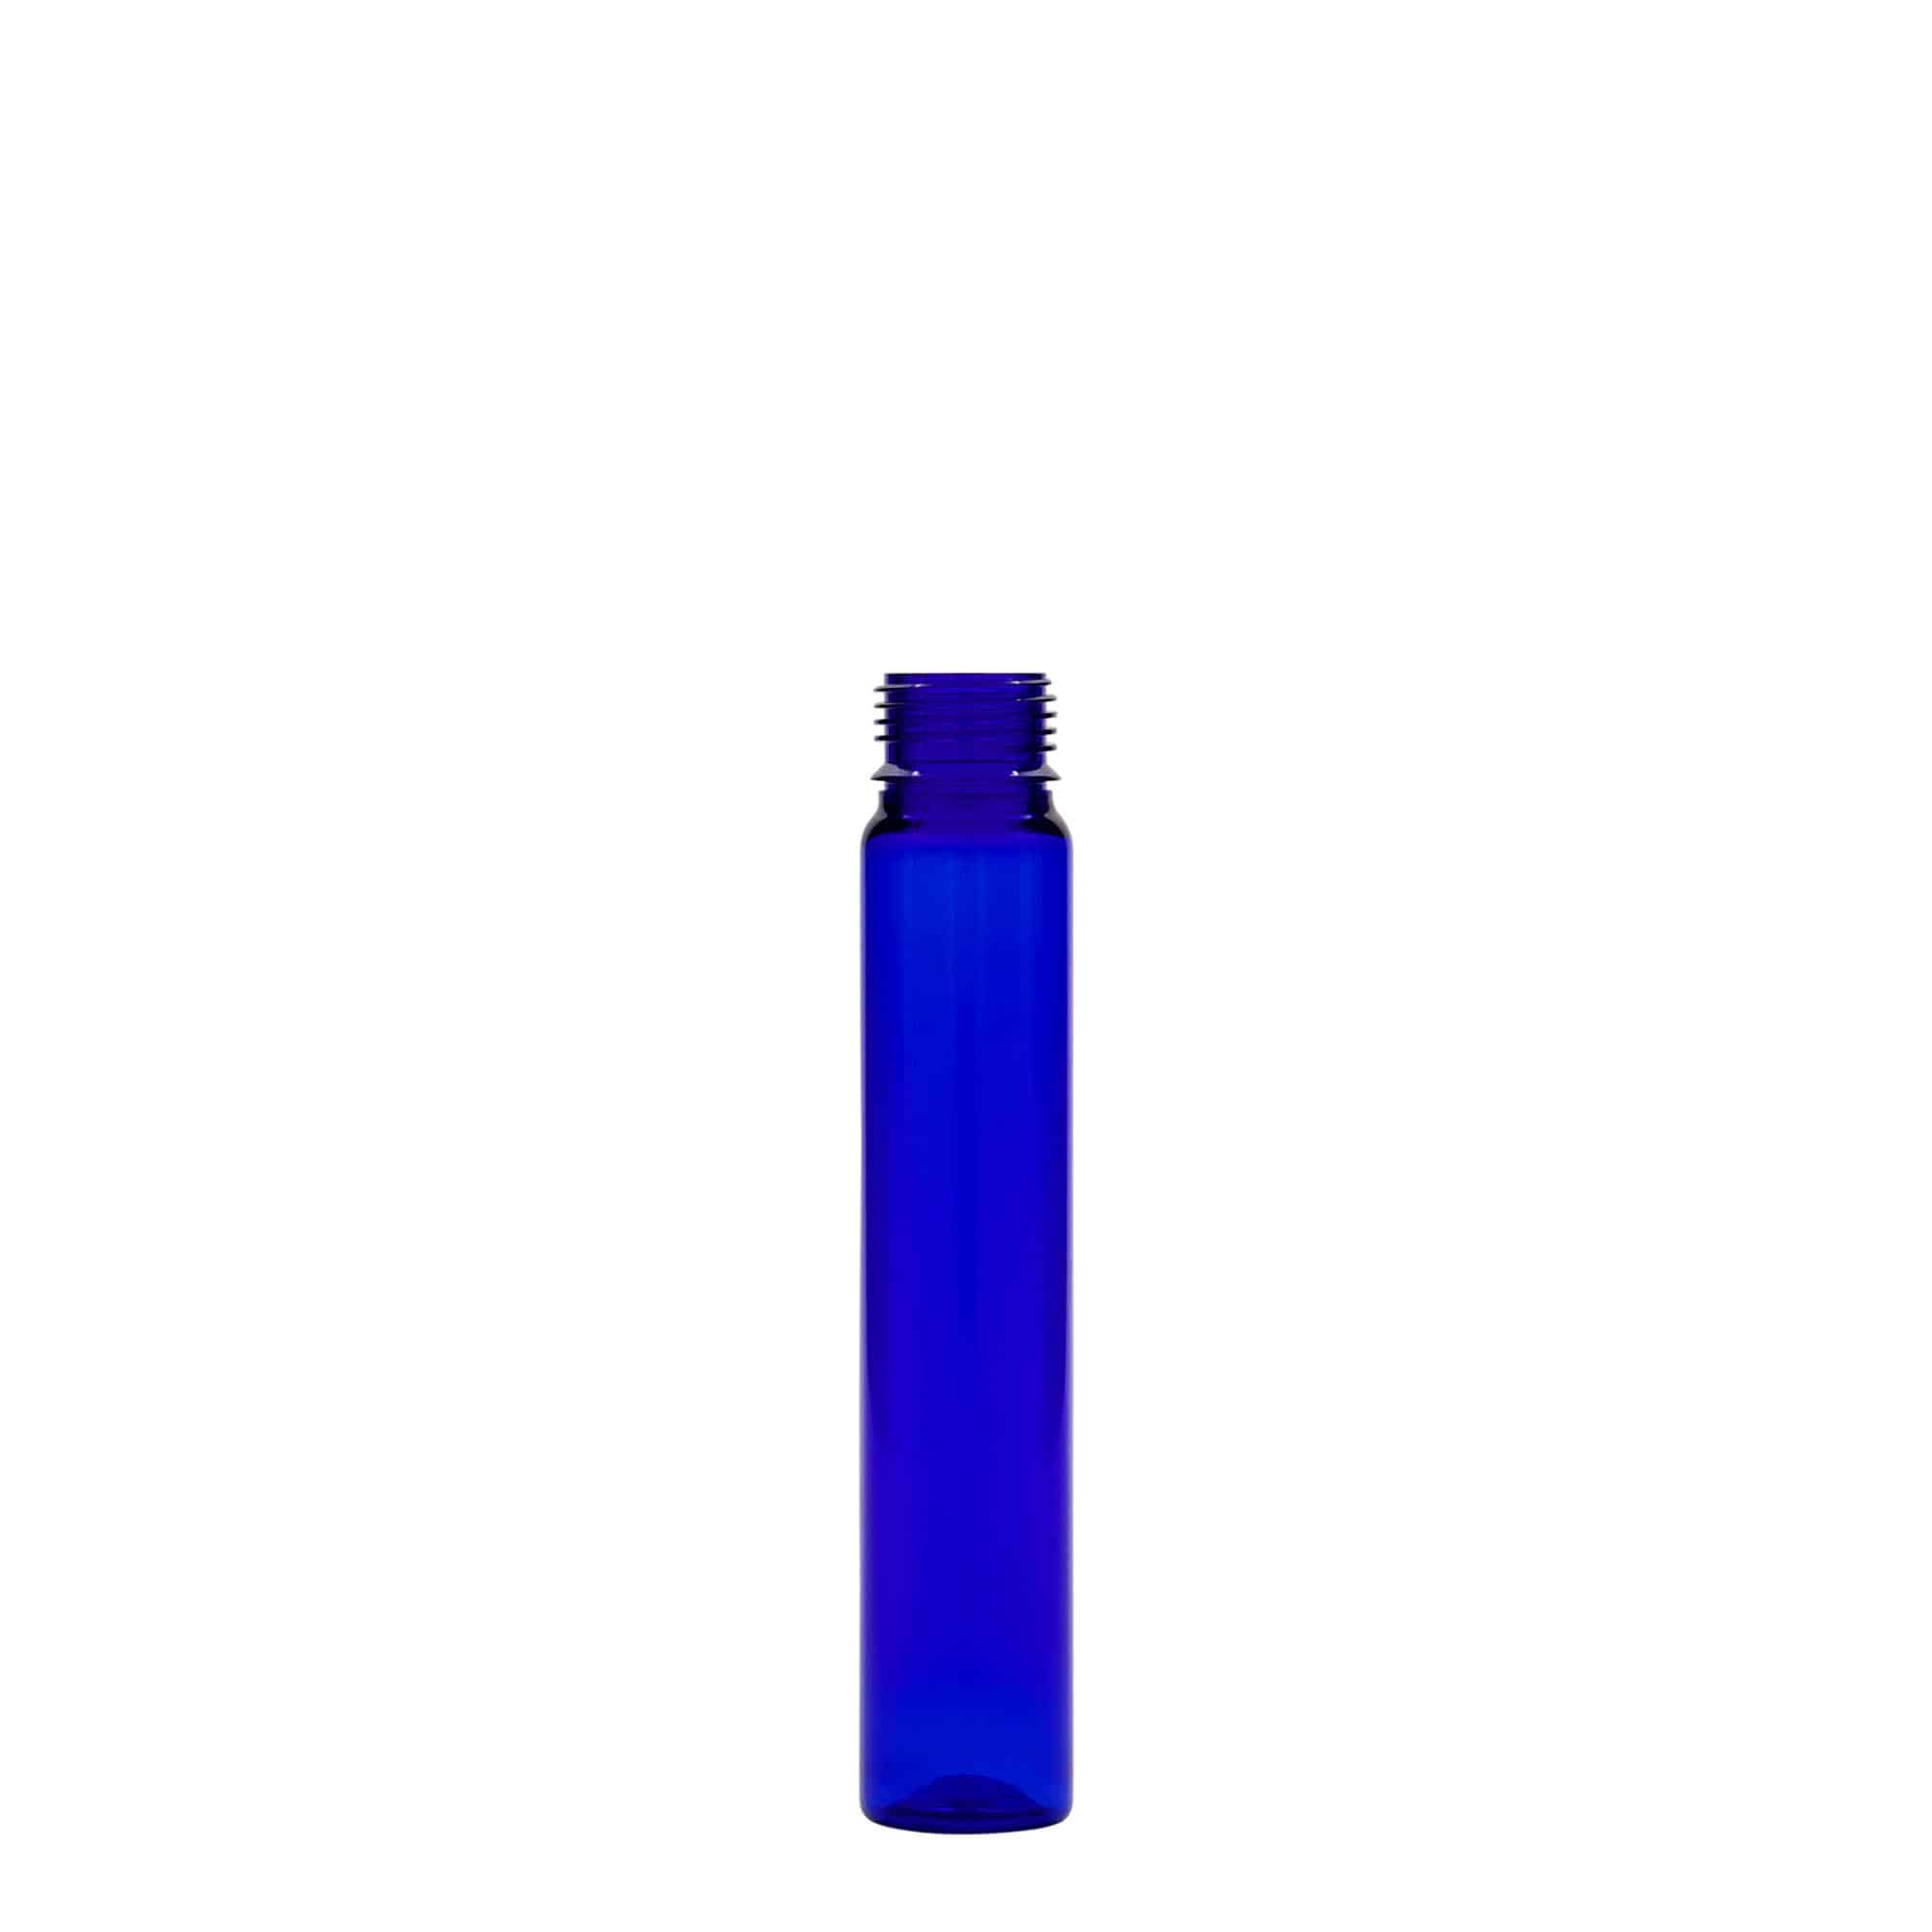 25 ml rurka PET, tworzywo sztuczne, kolor błękit królewski, zamknięcie: zakrętka